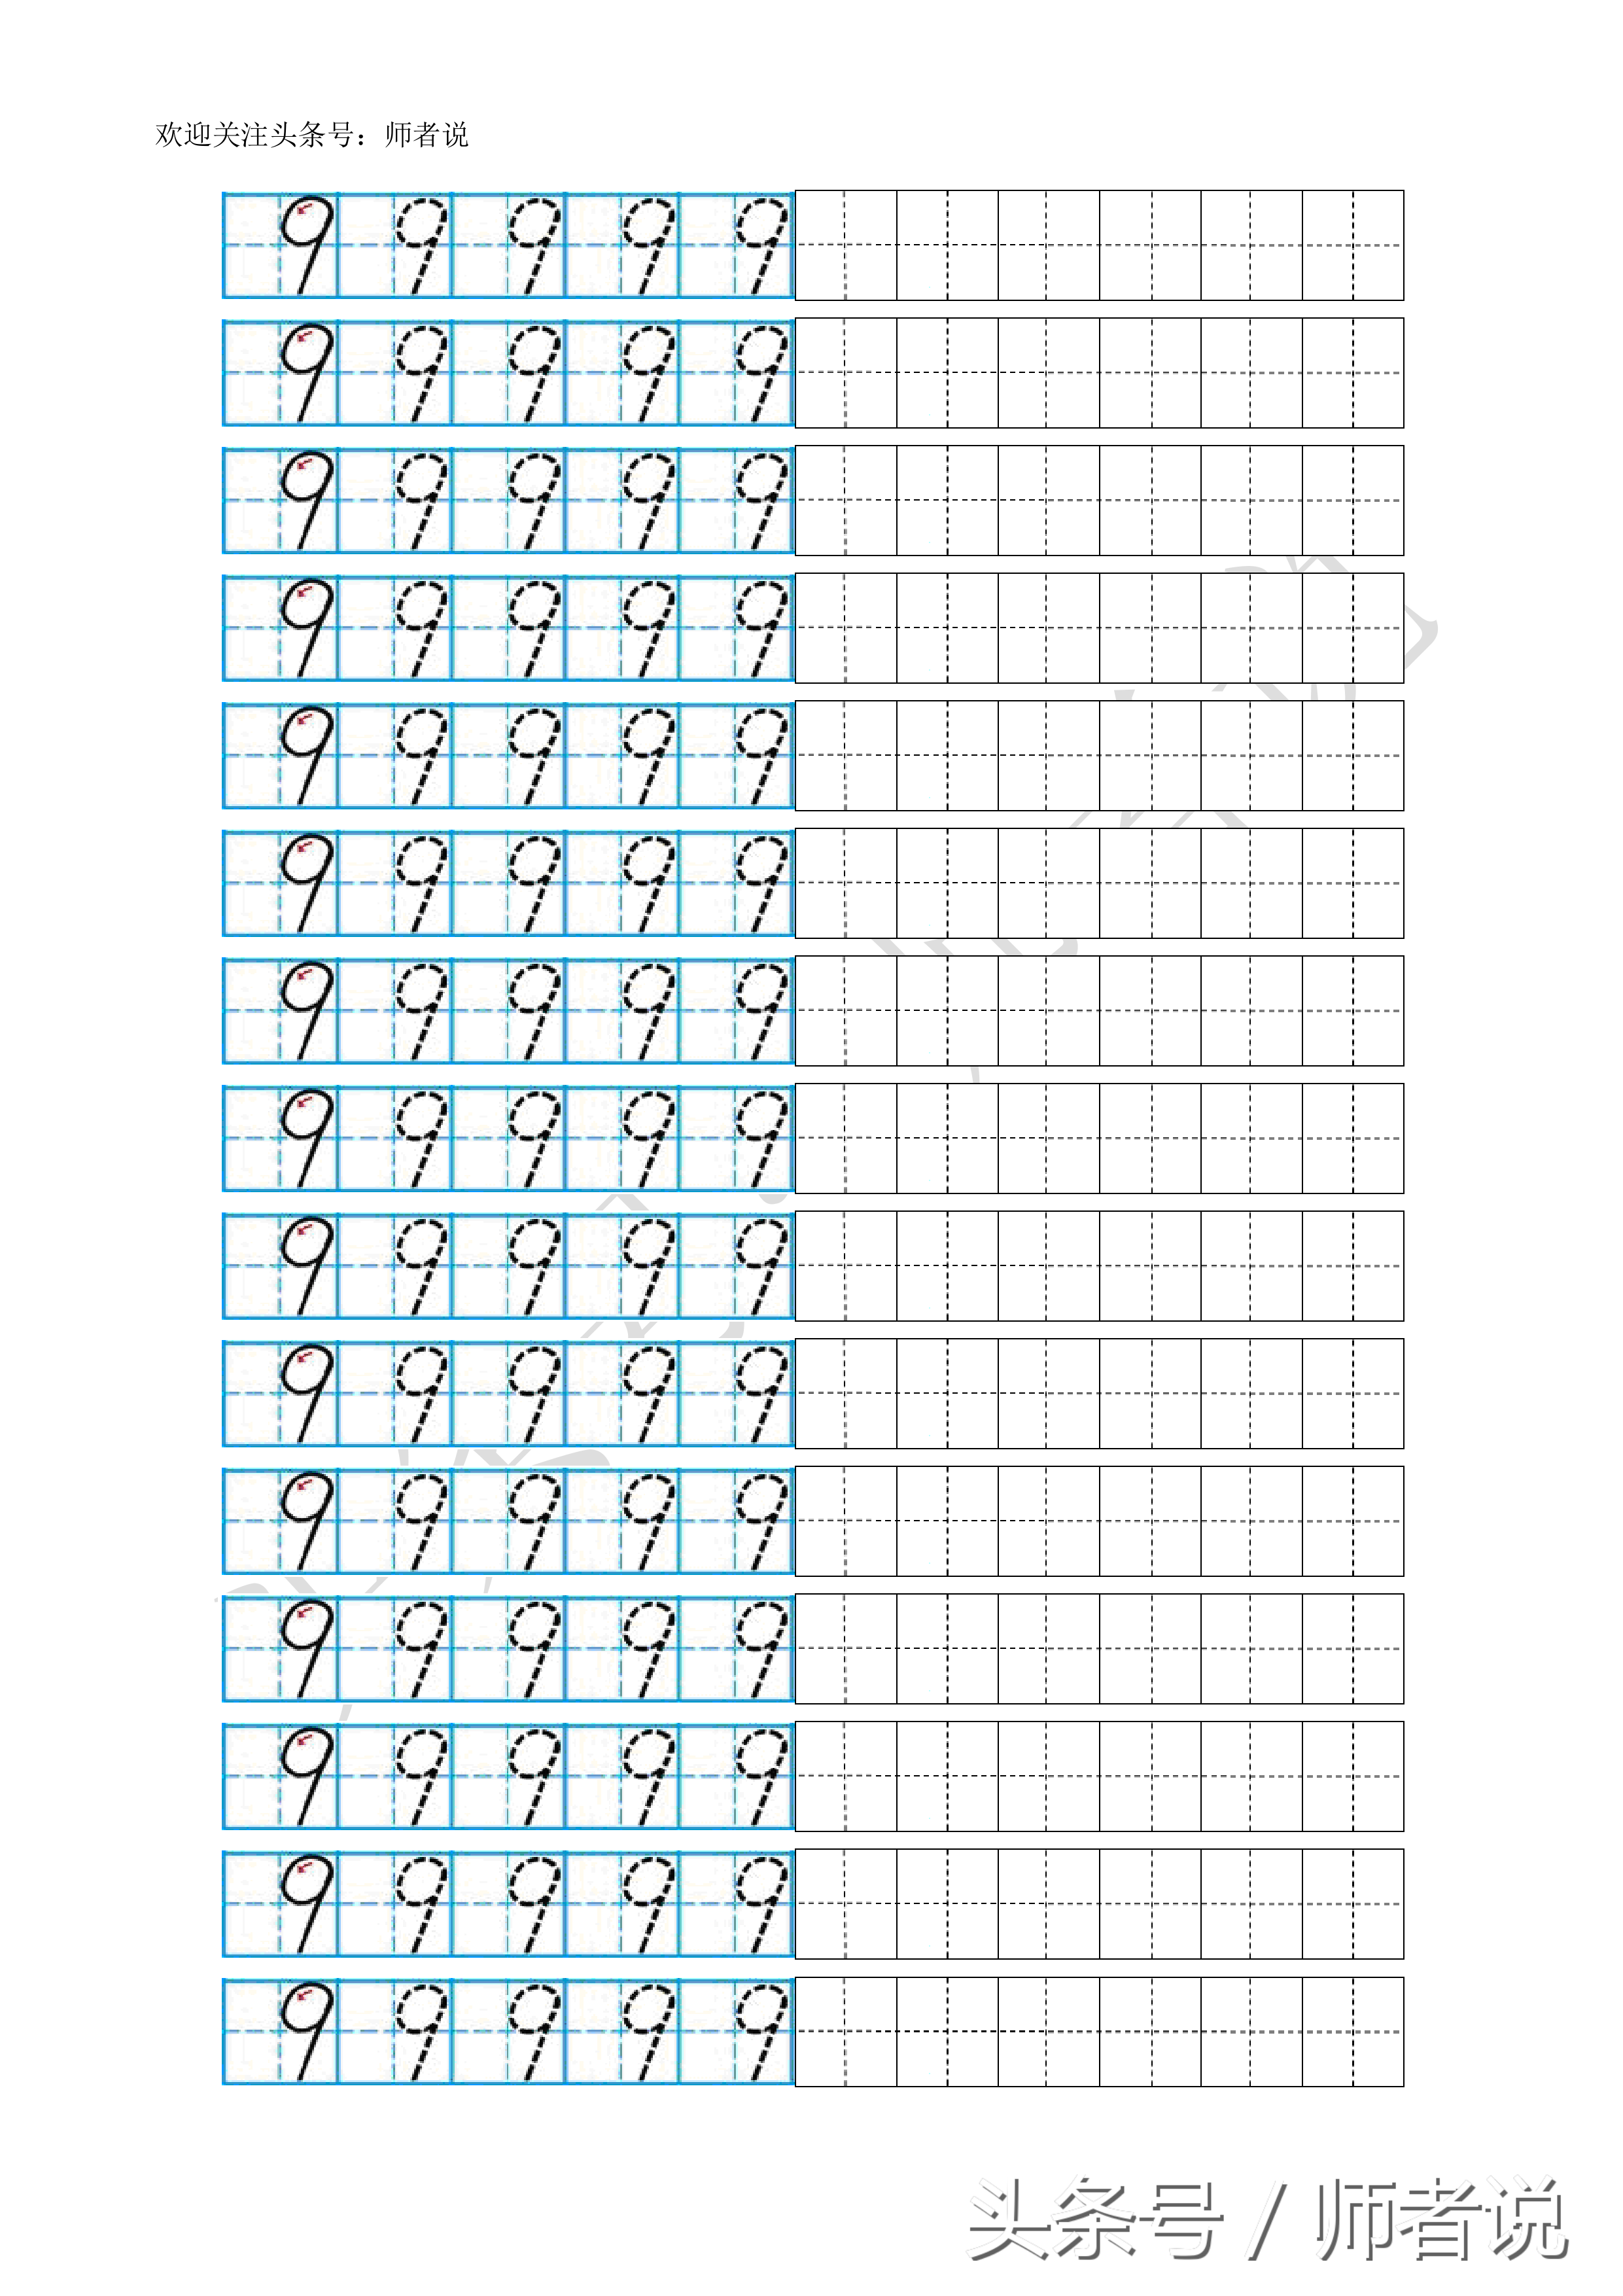 数字描红1到10打印（幼儿阿拉伯数字描红1-10打印版）(11)